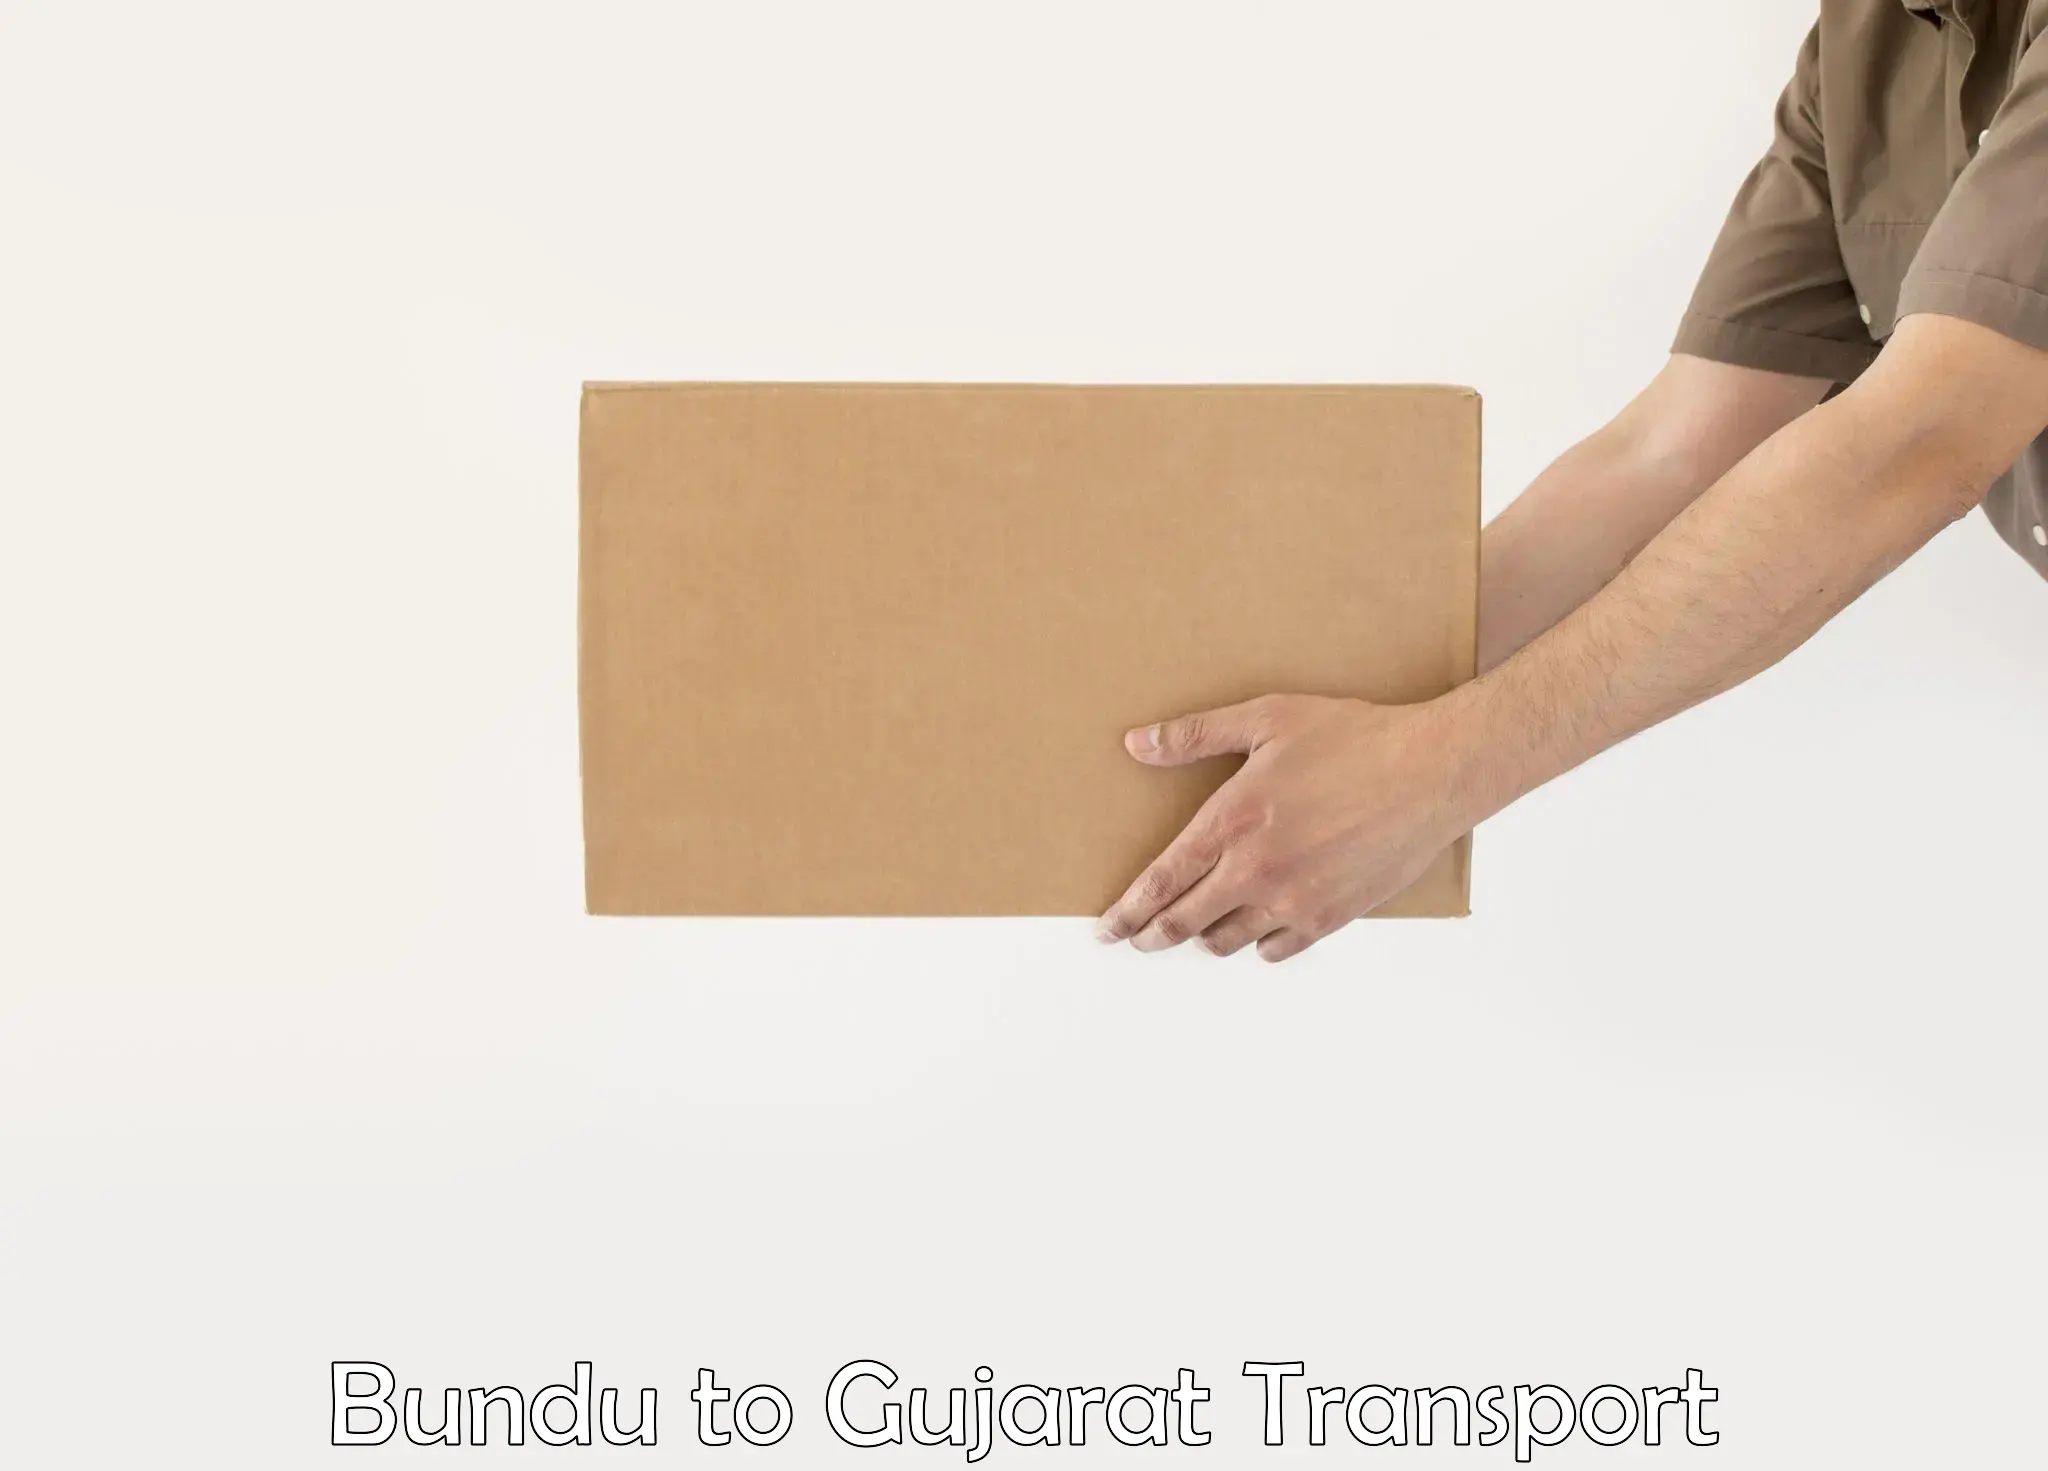 Daily parcel service transport Bundu to Gujarat